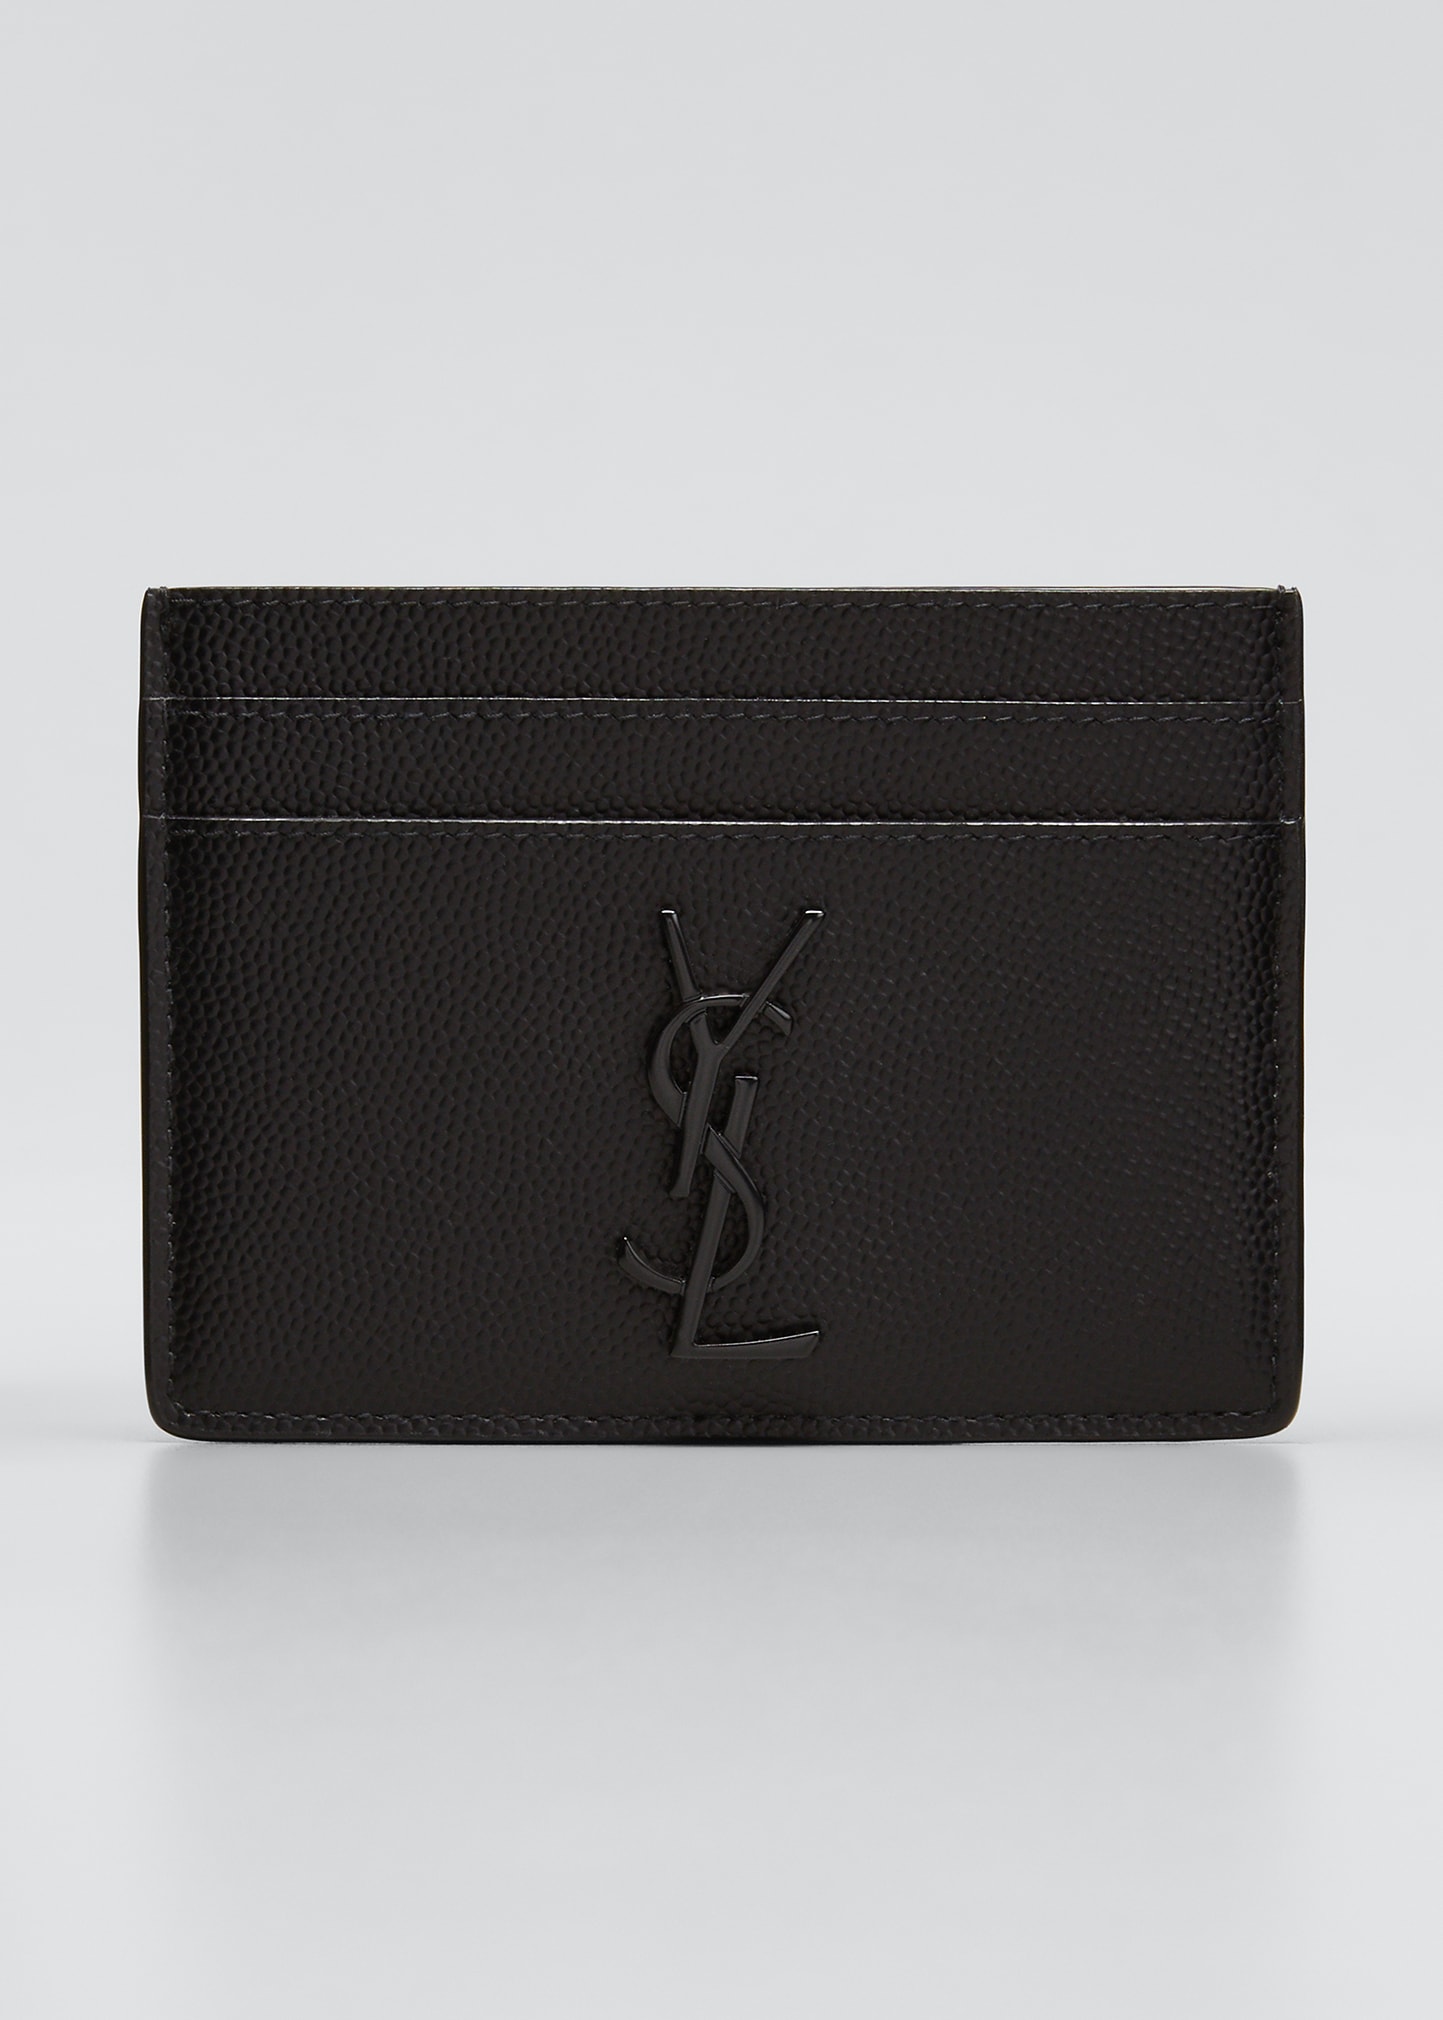 Saint Laurent Men's Tonal Ysl Logo Leather Card Holder